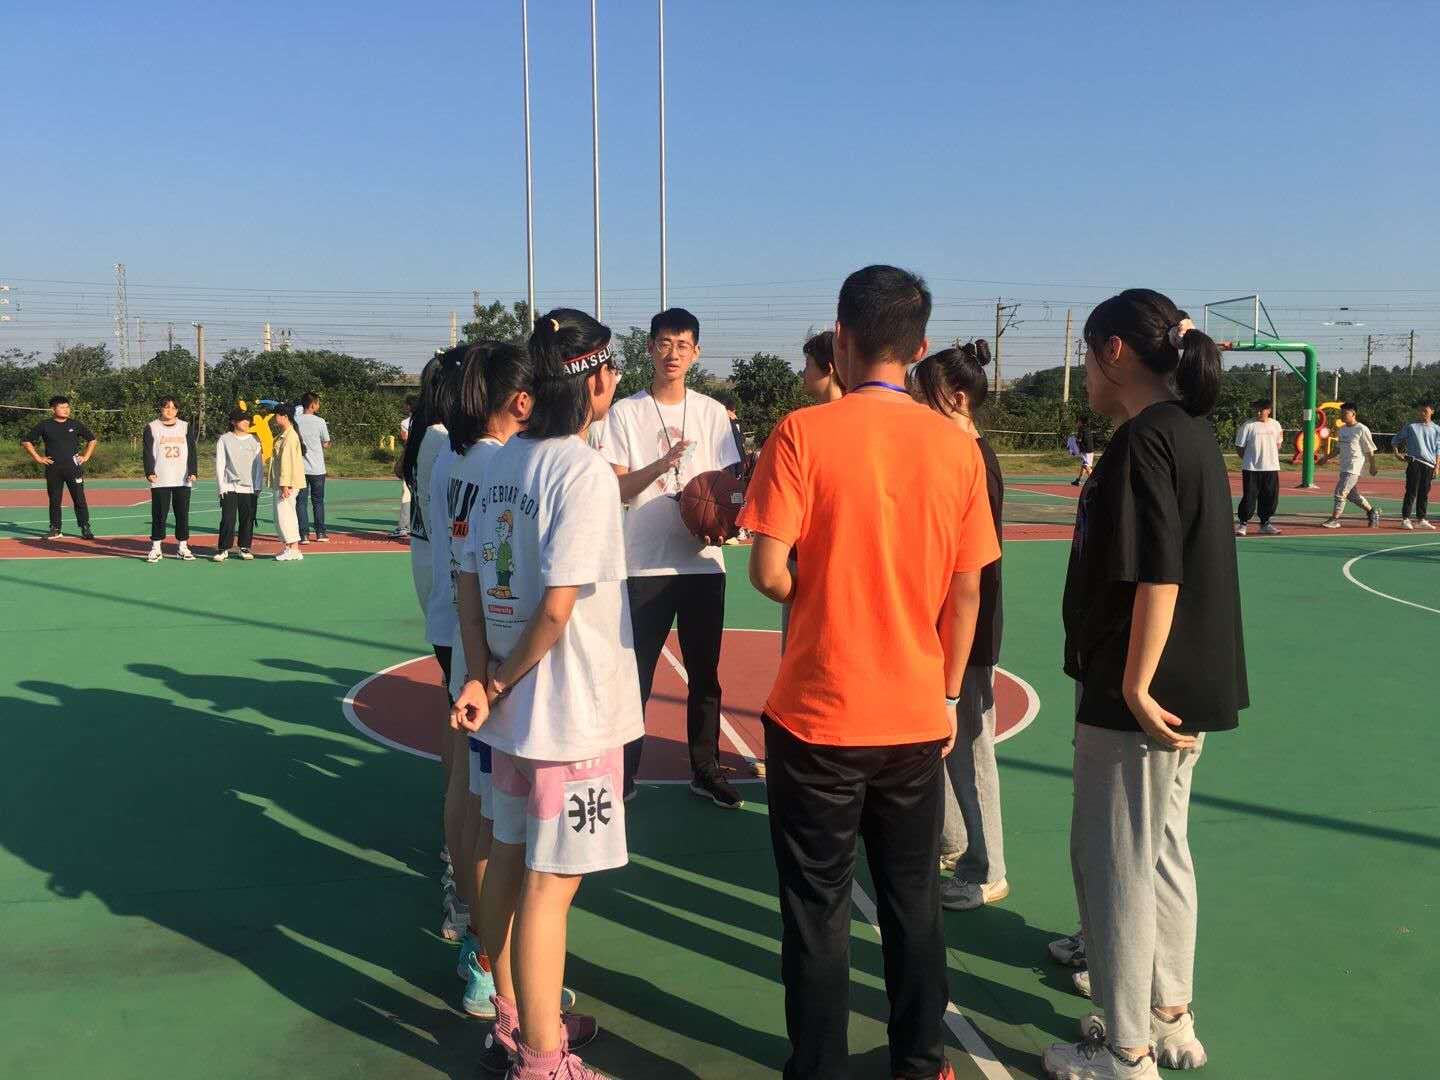 绽青春风采,秀篮球魅力--南昌向远轨道技术学校举办第十届“新生杯”篮球赛